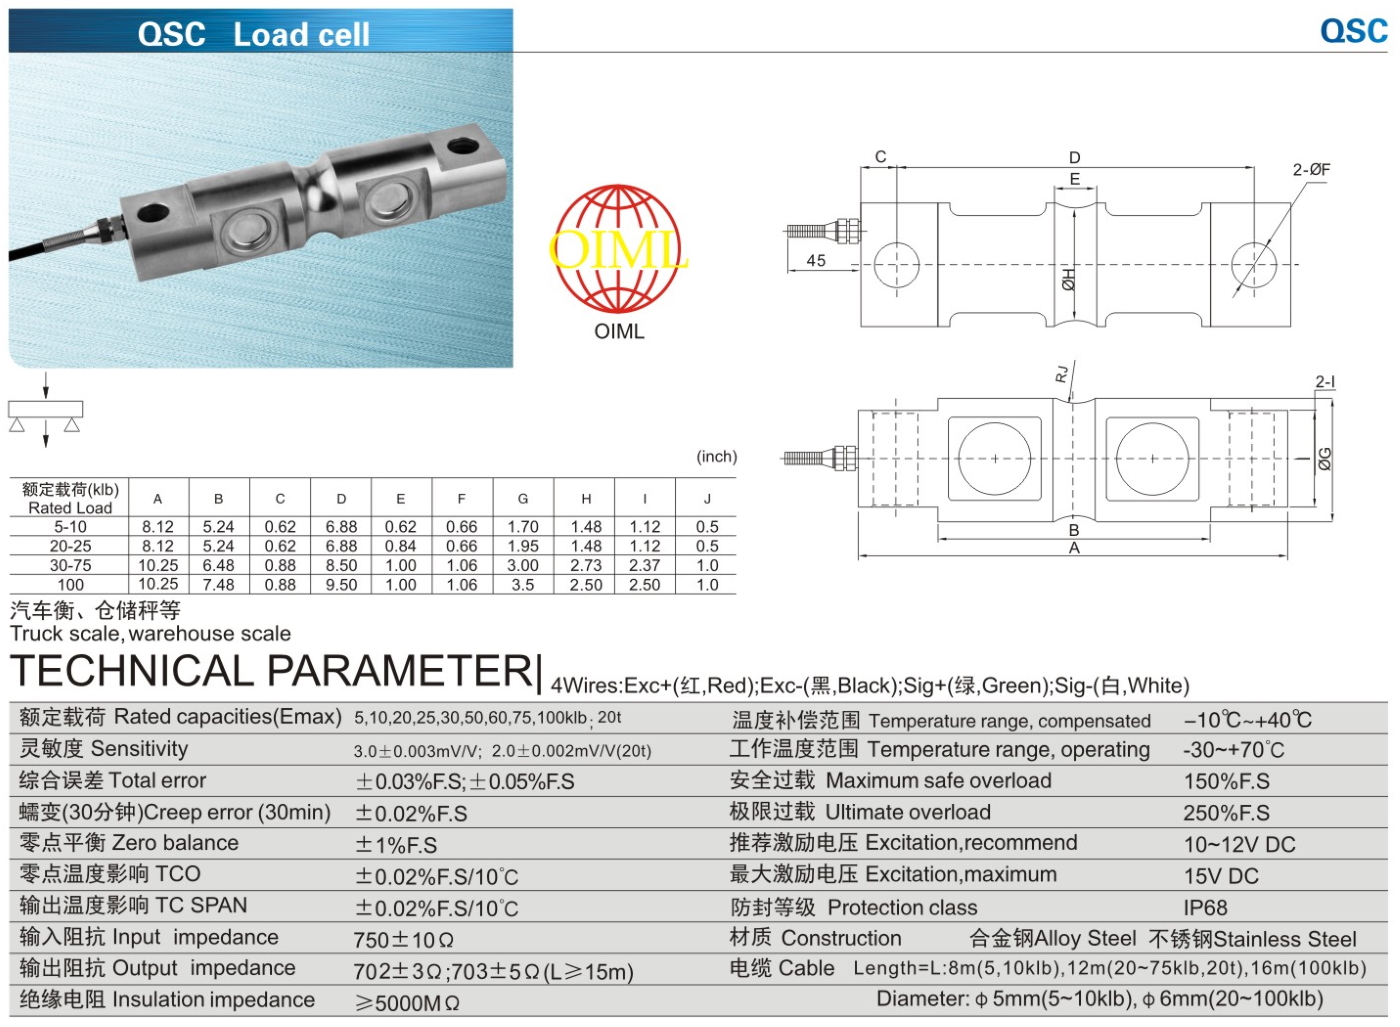 img/loadcell-images/double-ended-shear-beam/KELI_QSC_Loadcell-TTM_Teknoloji.jpg